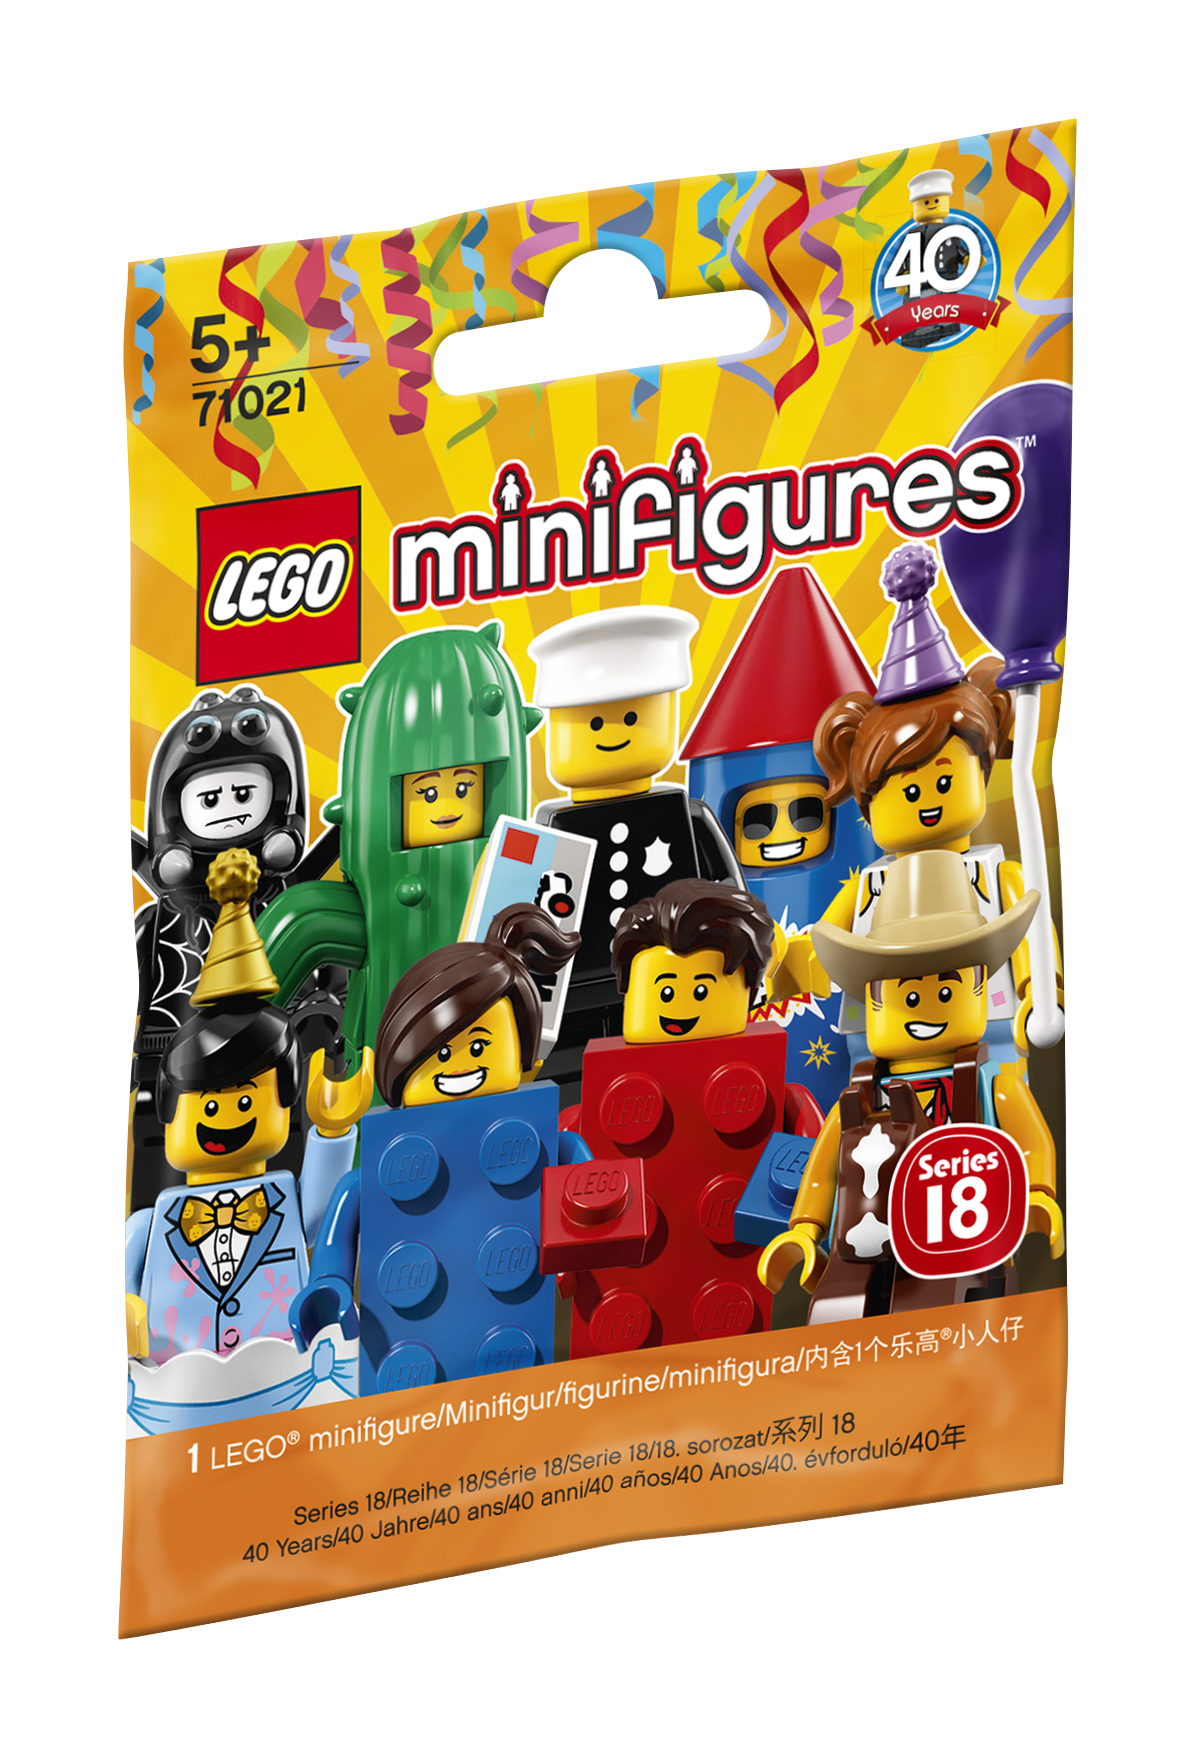 LEGO Minifigures Series 18: Party - 71021 Baufigur